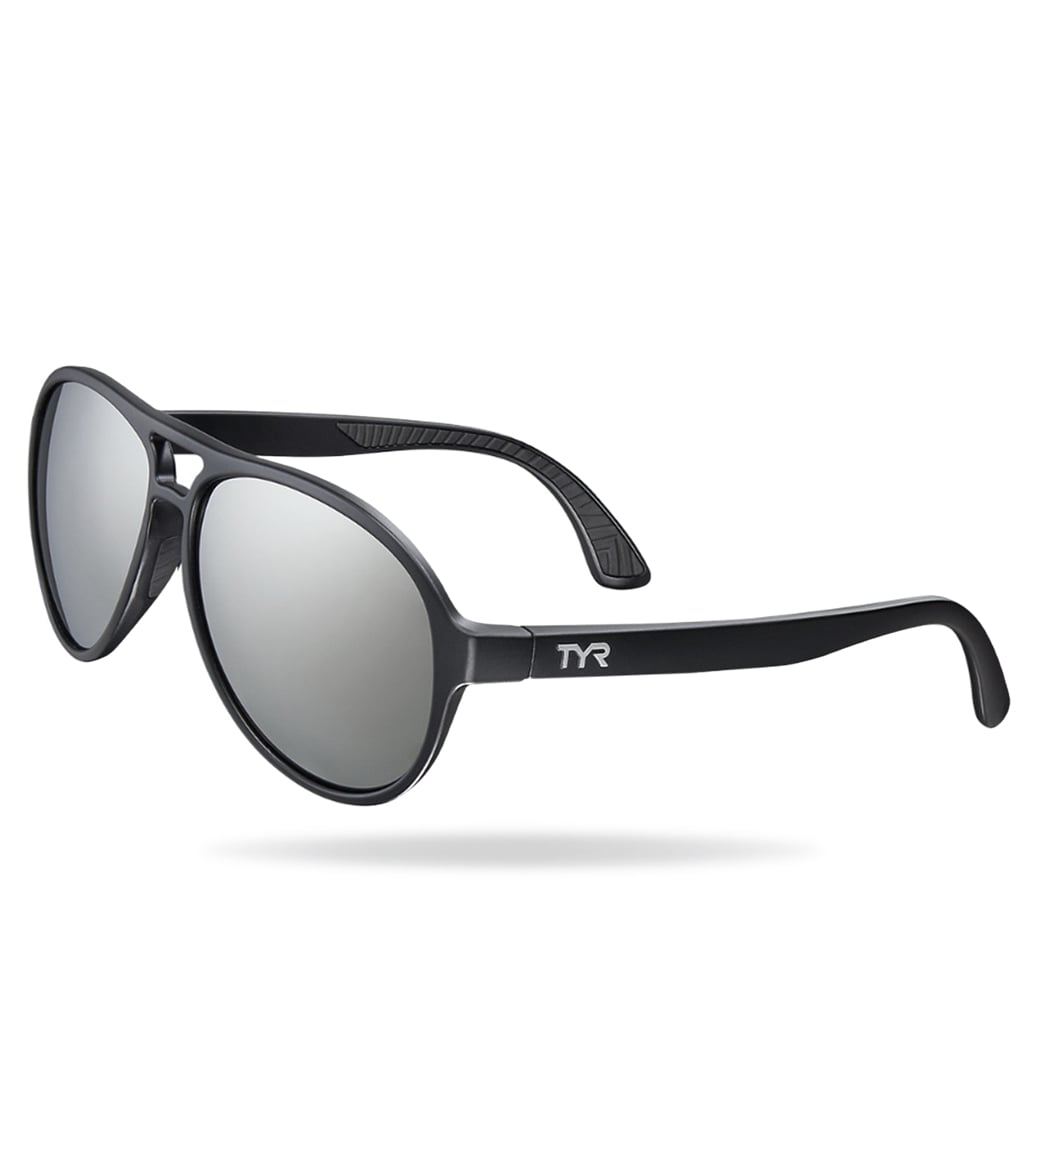 TYR Men's Newland Aviator Small Sunglasses - Silver/Black - Swimoutlet.com